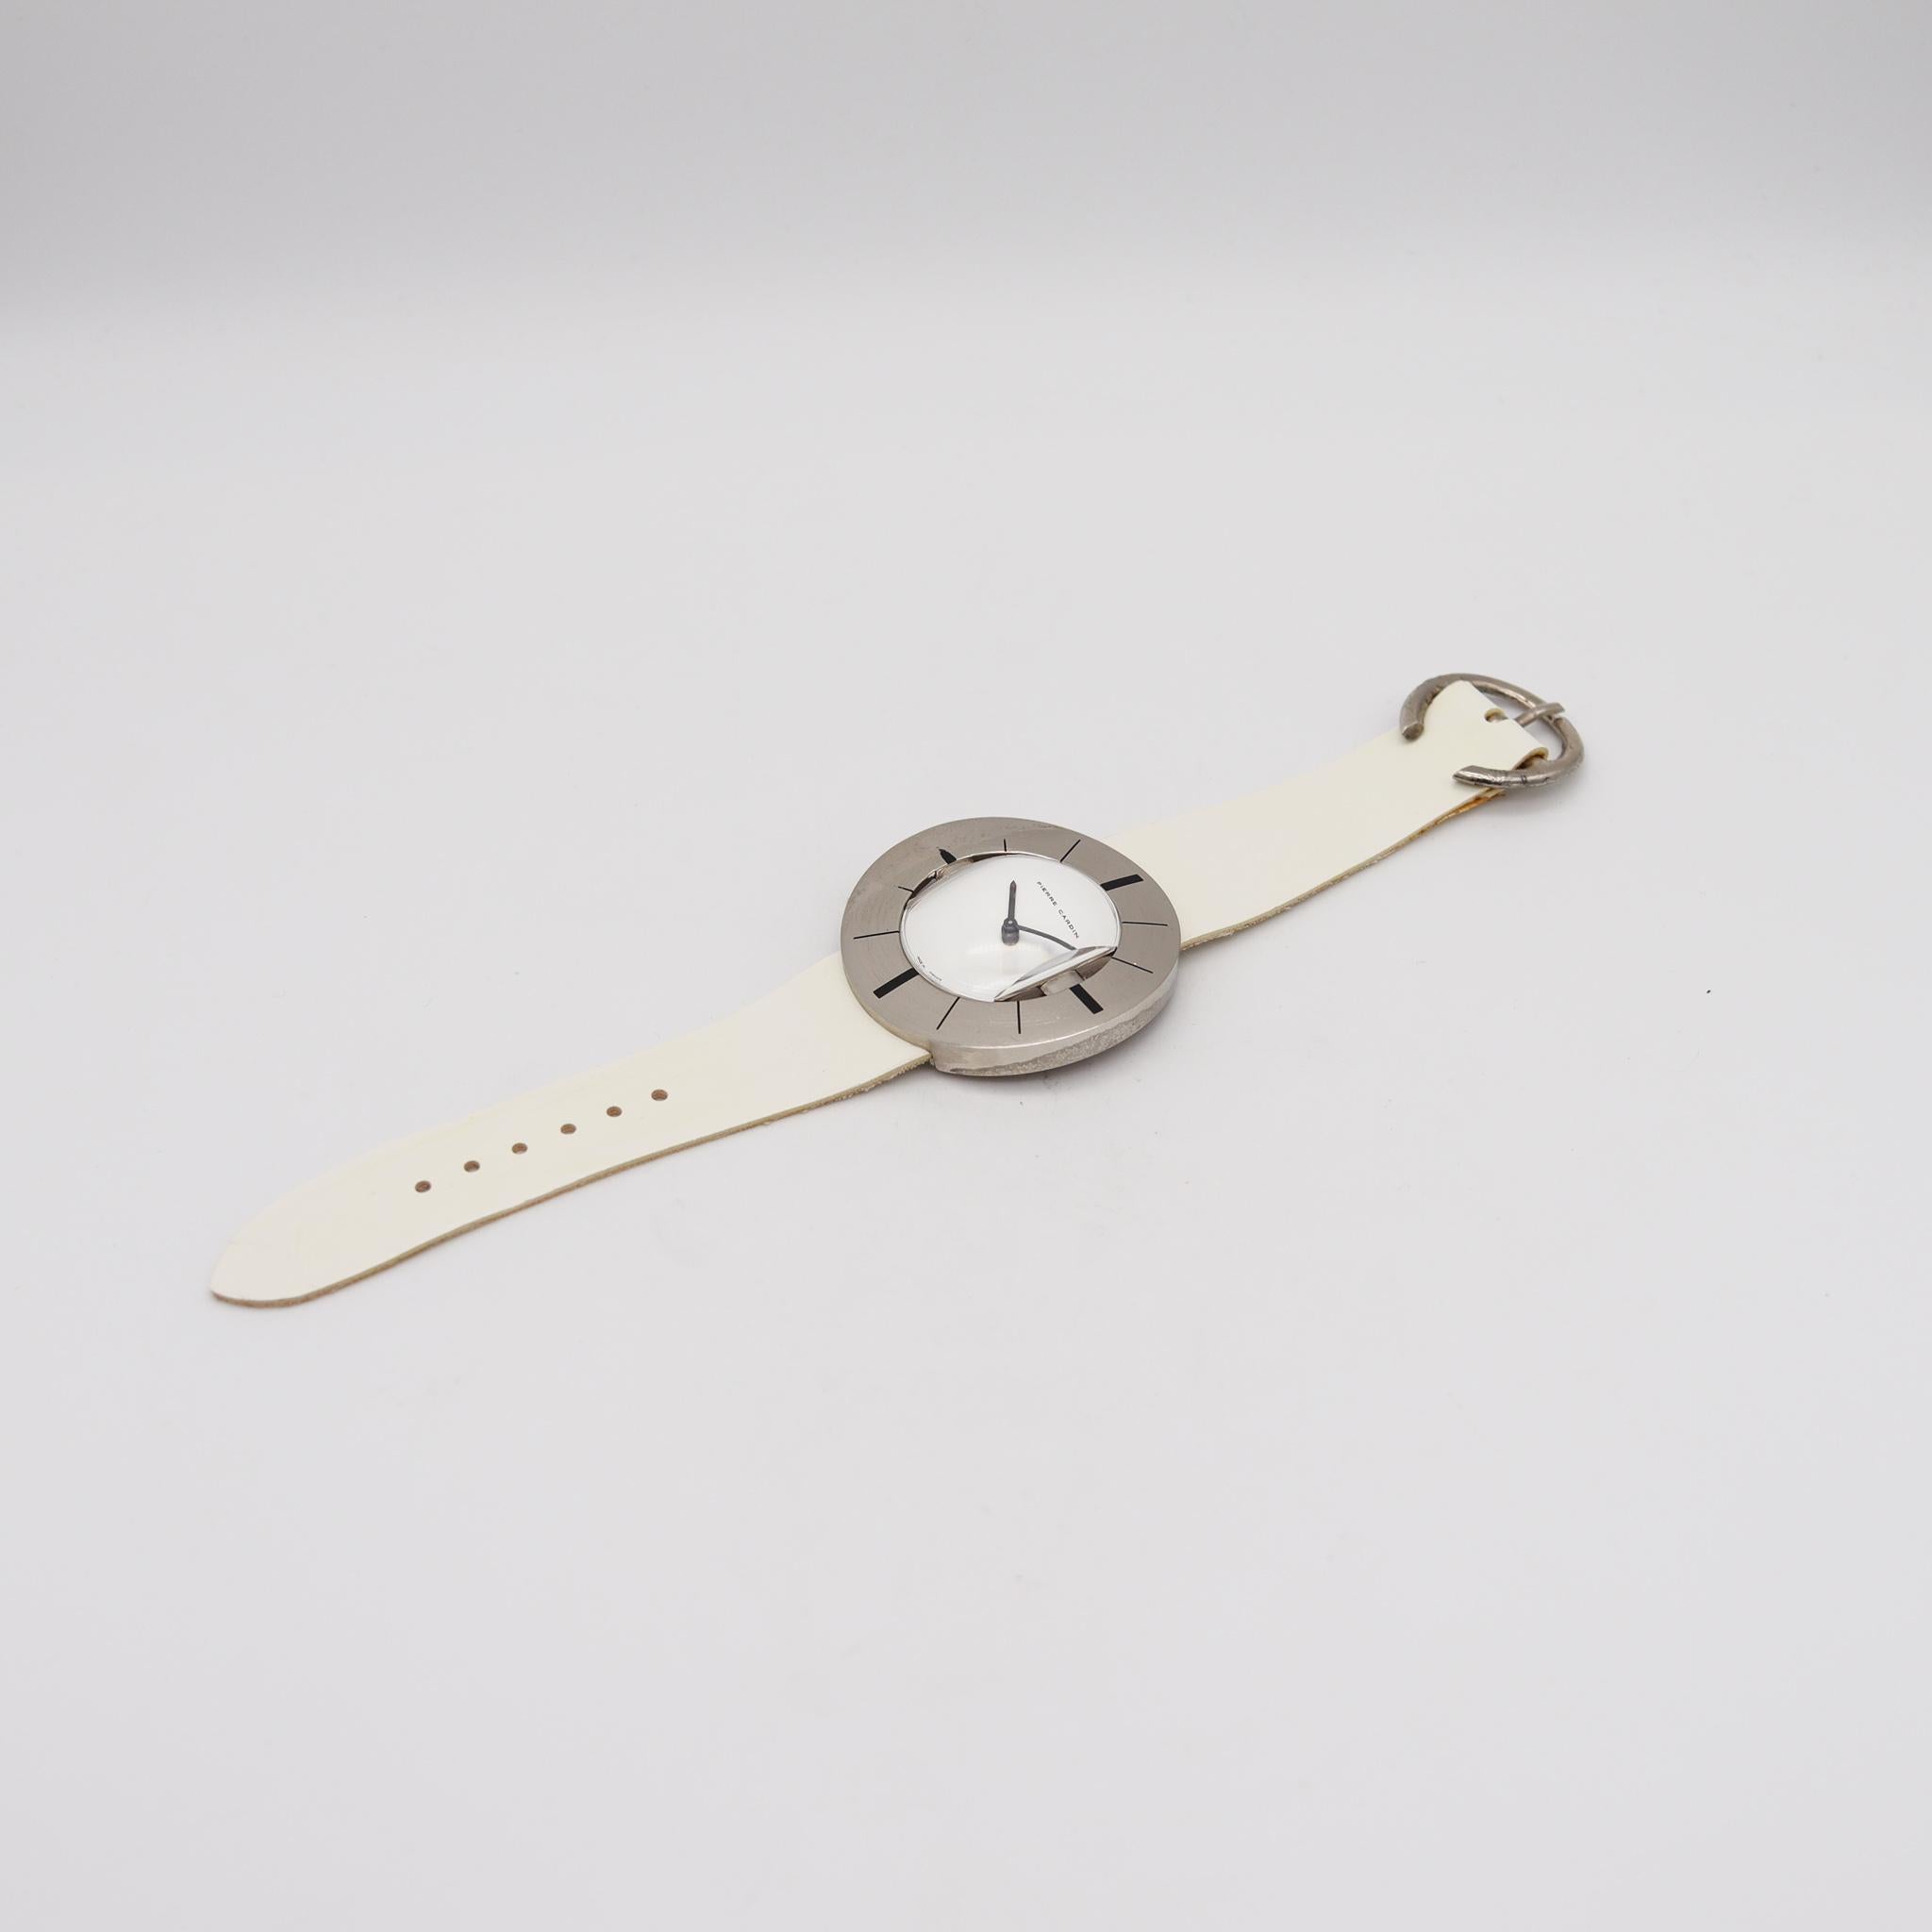 Montre-bracelet Jaeger-LeCoultre PC102 conçue par Pierre Cardin.

Fabuleuse montre-bracelet rétro, conçue en France par le couturier parisien Pierre Cardin, en 1971. Cette belle et rare montre est le modèle Pierre Cardin PC102, et a été conçue avec